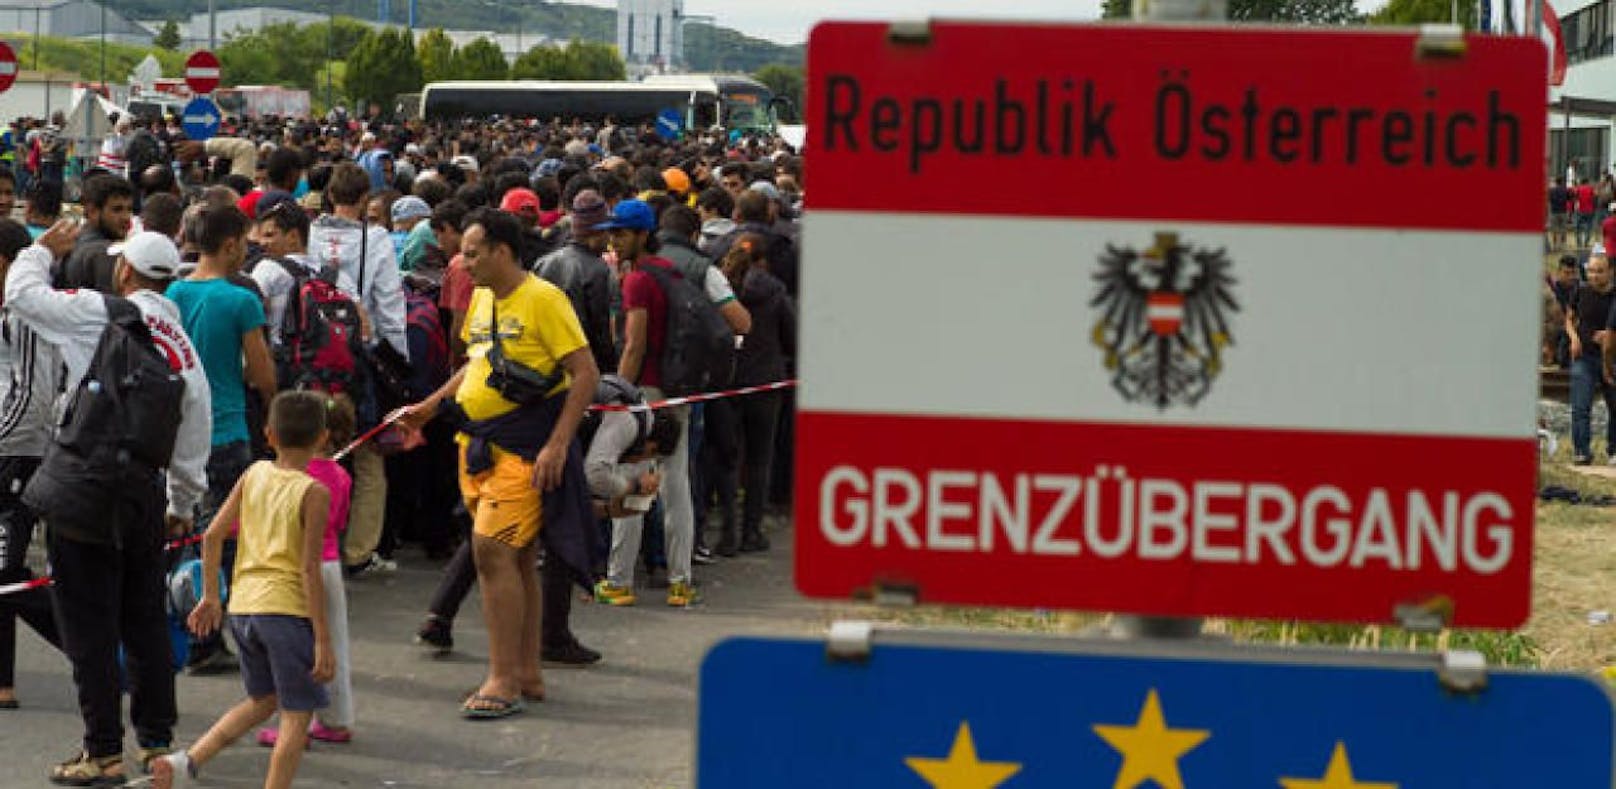 Neuer Grenzstreit mit der EU bahnt sich an. Brüssel fordert Ende der Kontrollen.